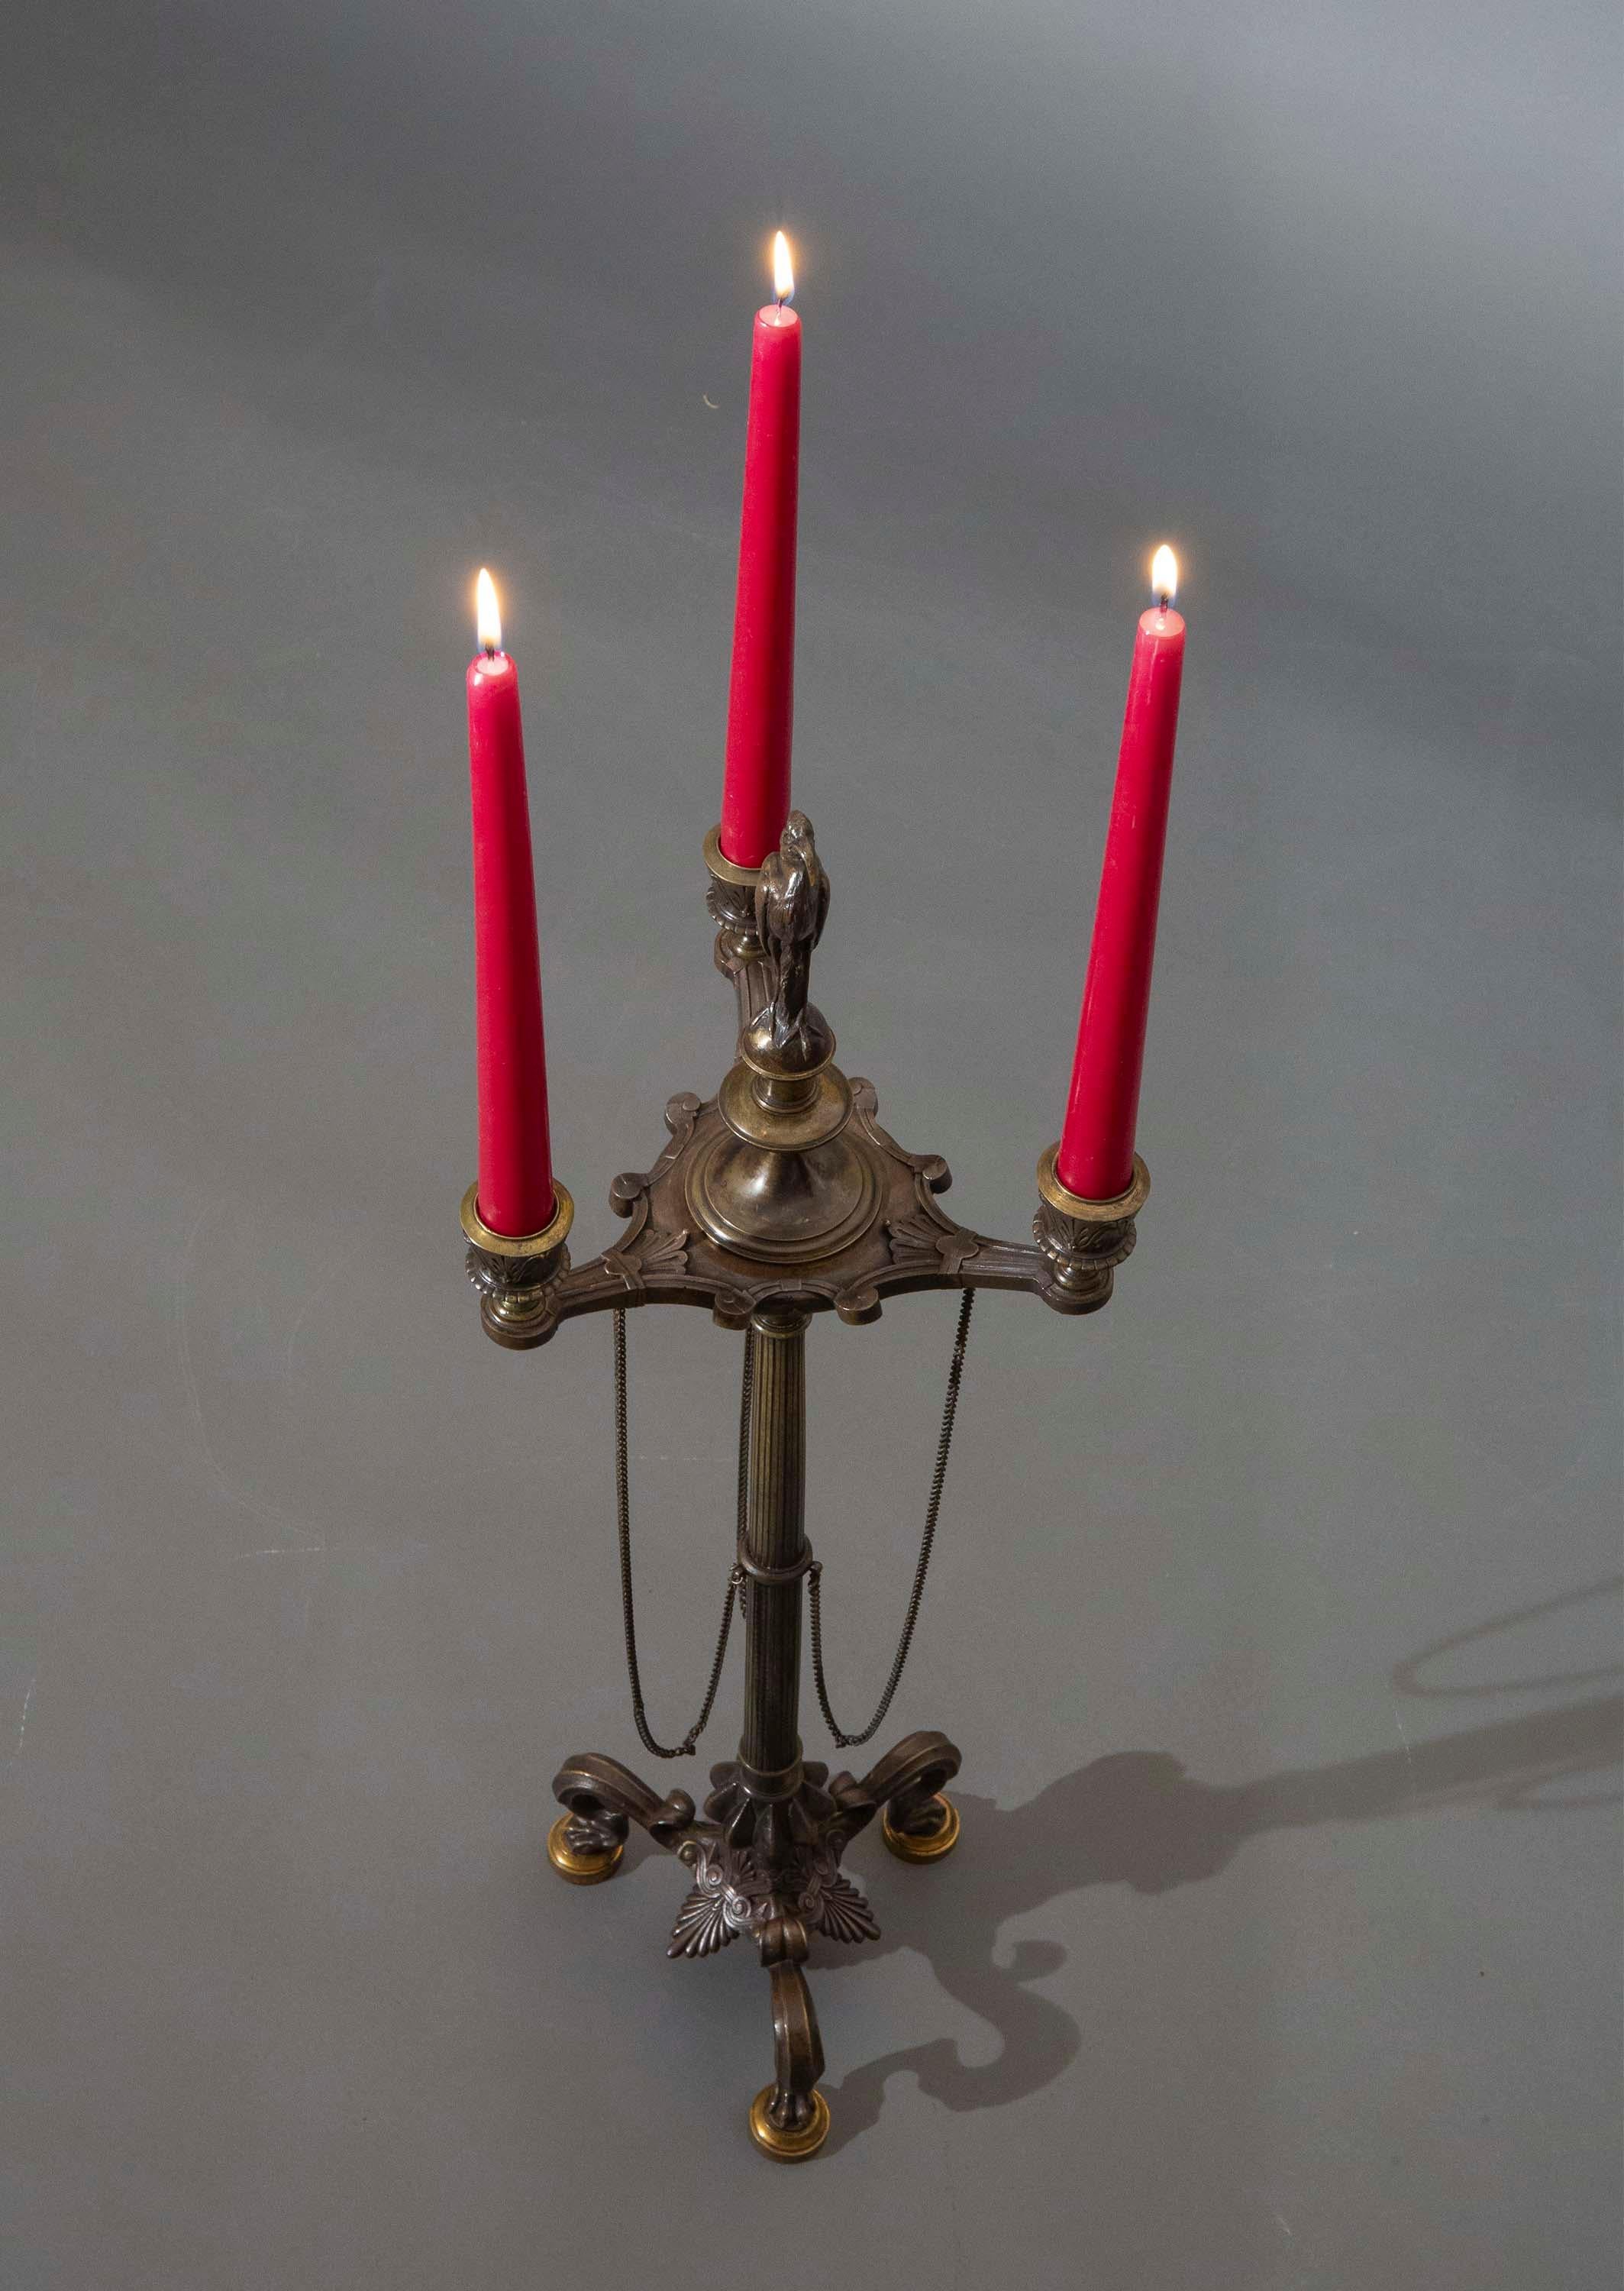 Un candélabre étrusque en bronze patiné et coulé d'une grande finesse, dans le goût du Grand Tour.
France ou Italie, milieu ou fin du XIXe siècle.

Pourquoi nous l'aimons
Nous apprécions la qualité de la fonte et de la patine de ce superbe